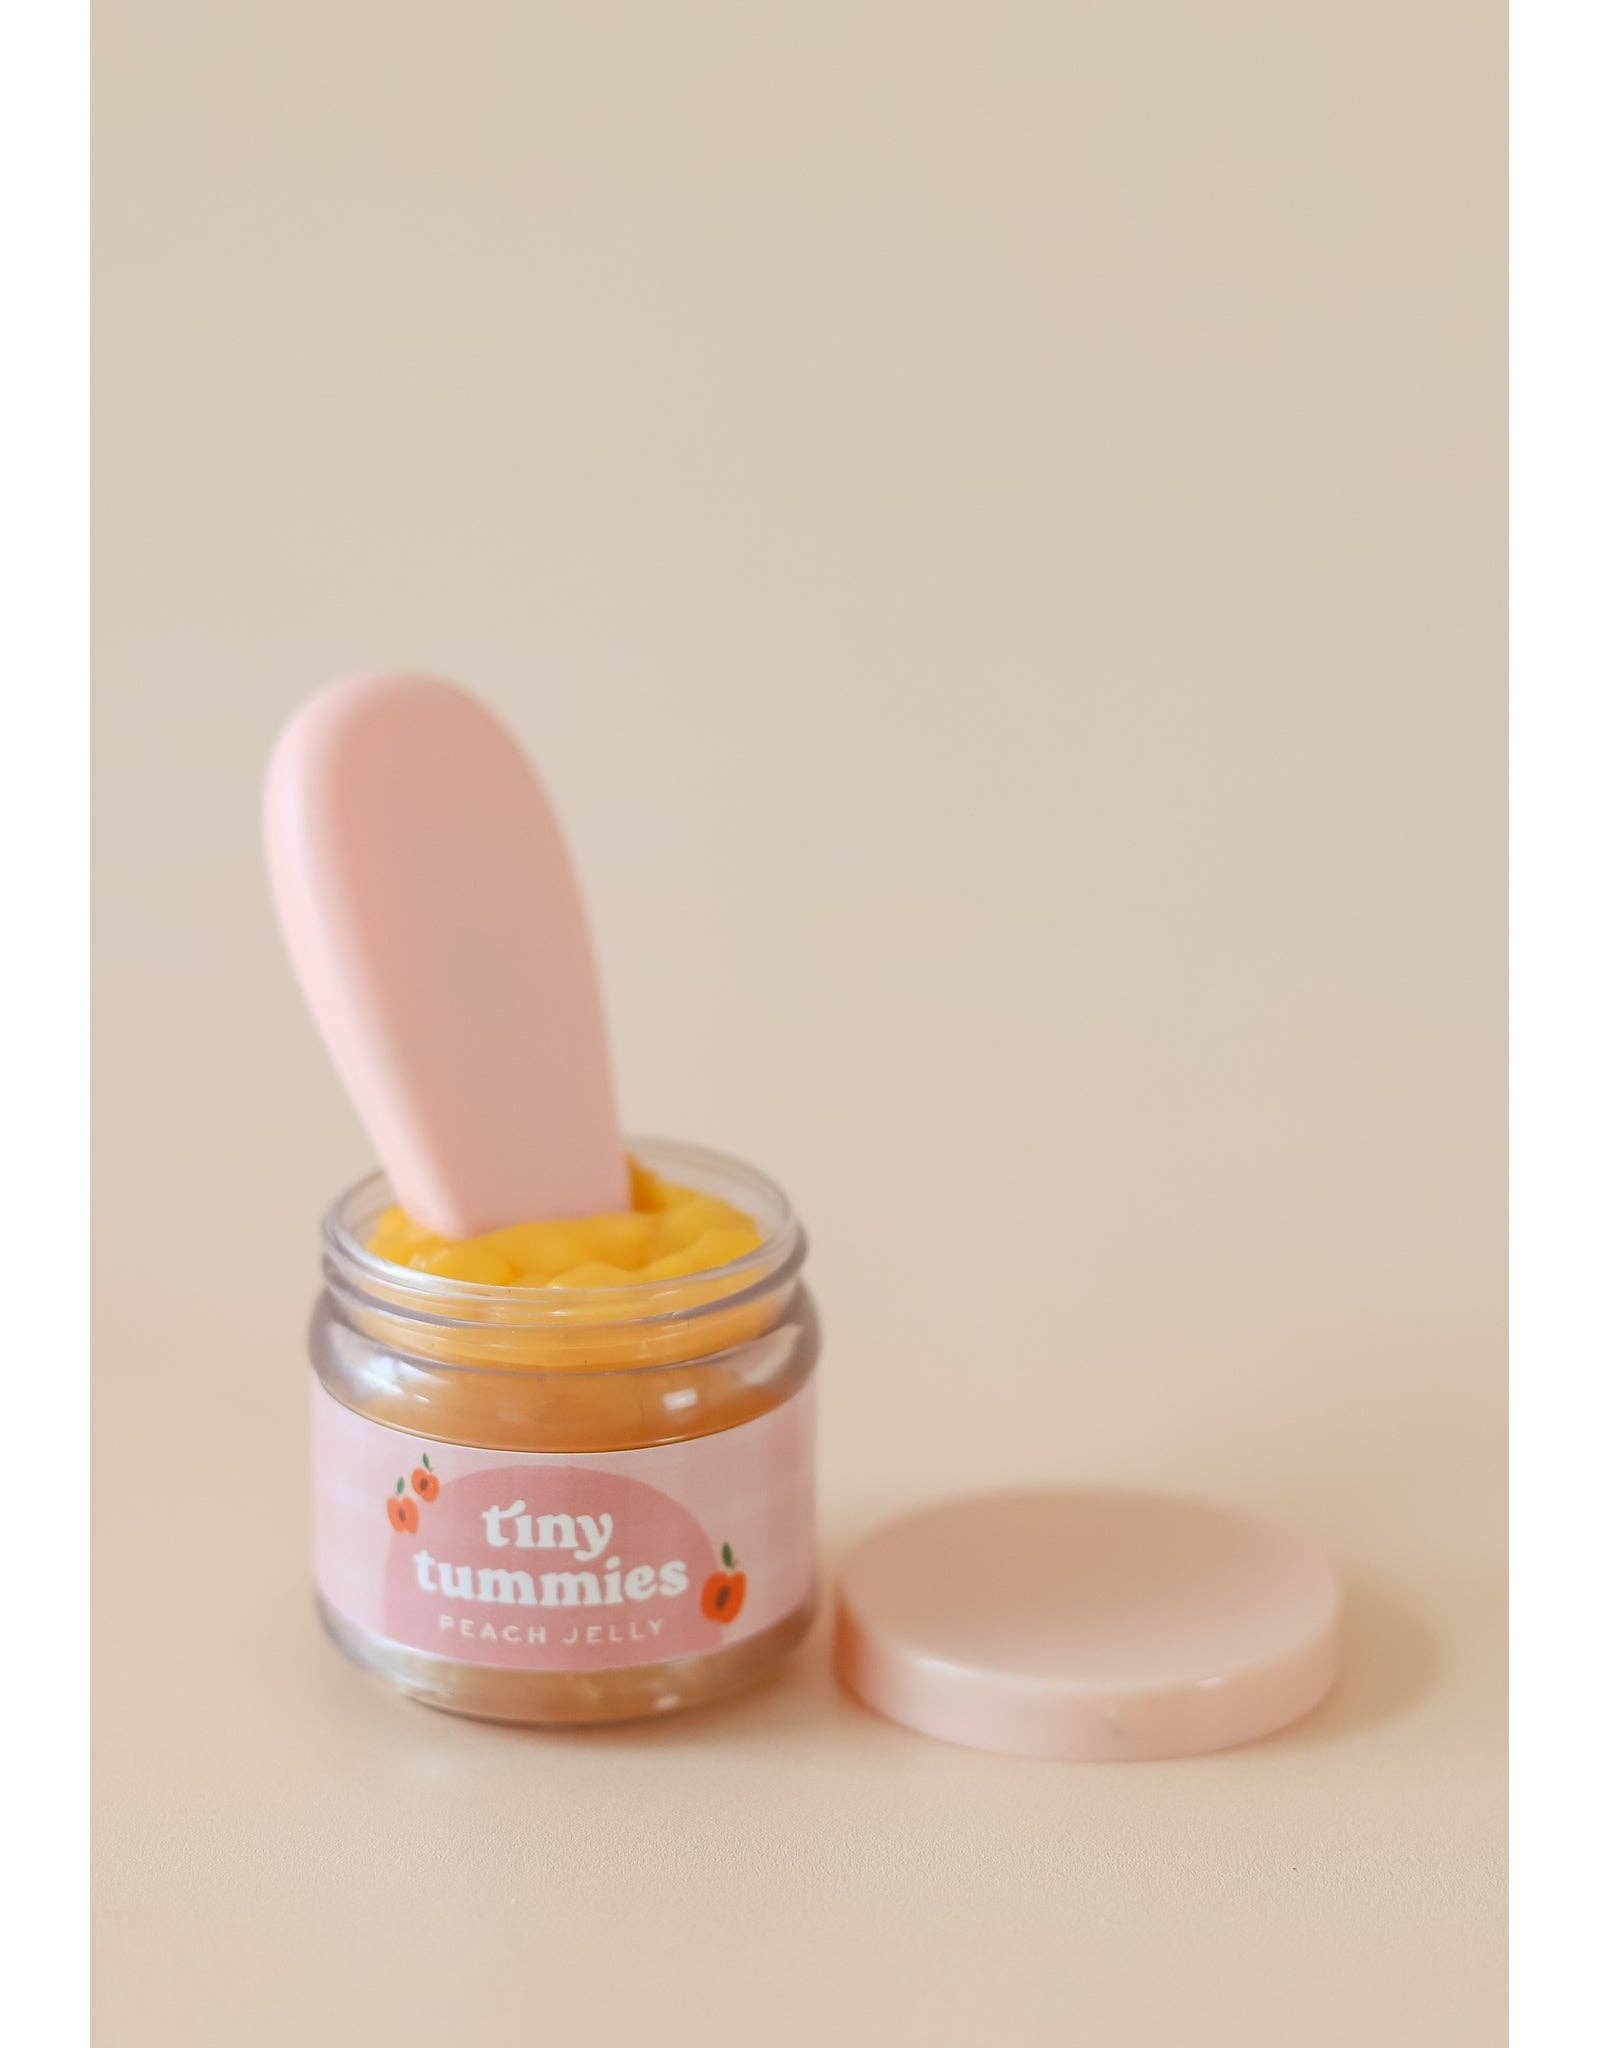 Tiny Tummies - Peach jelly food - Jar and spoon - Tiny Harlow